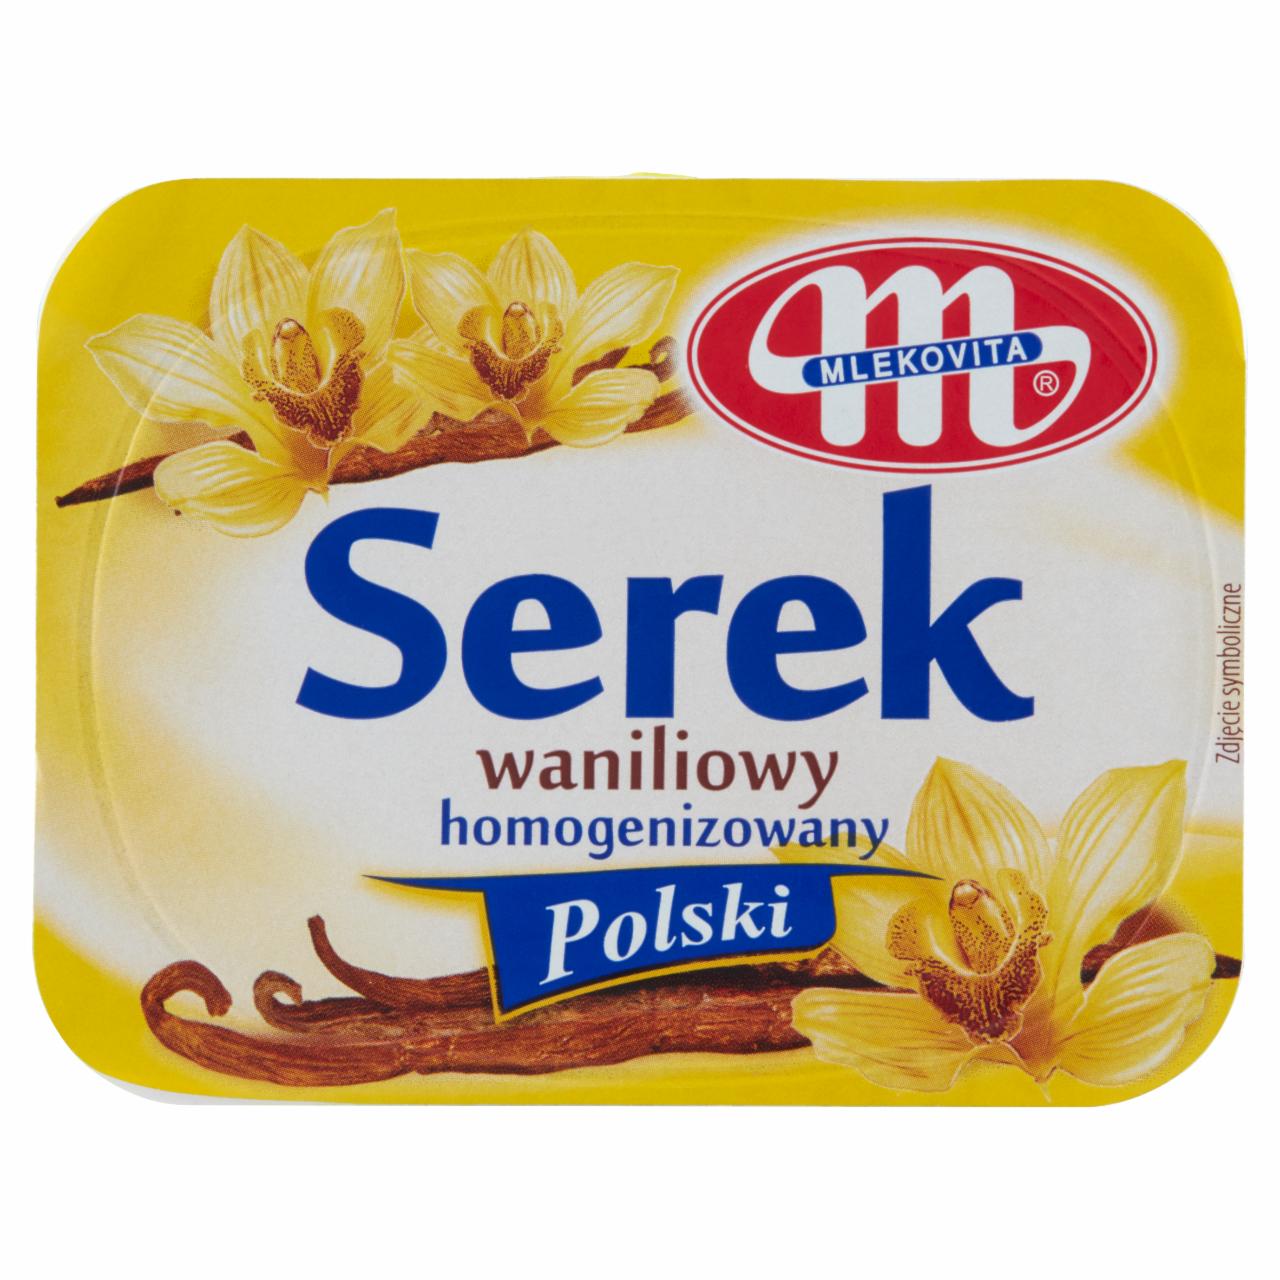 Zdjęcia - Mlekovita Serek homogenizowany Polski waniliowy 150 g